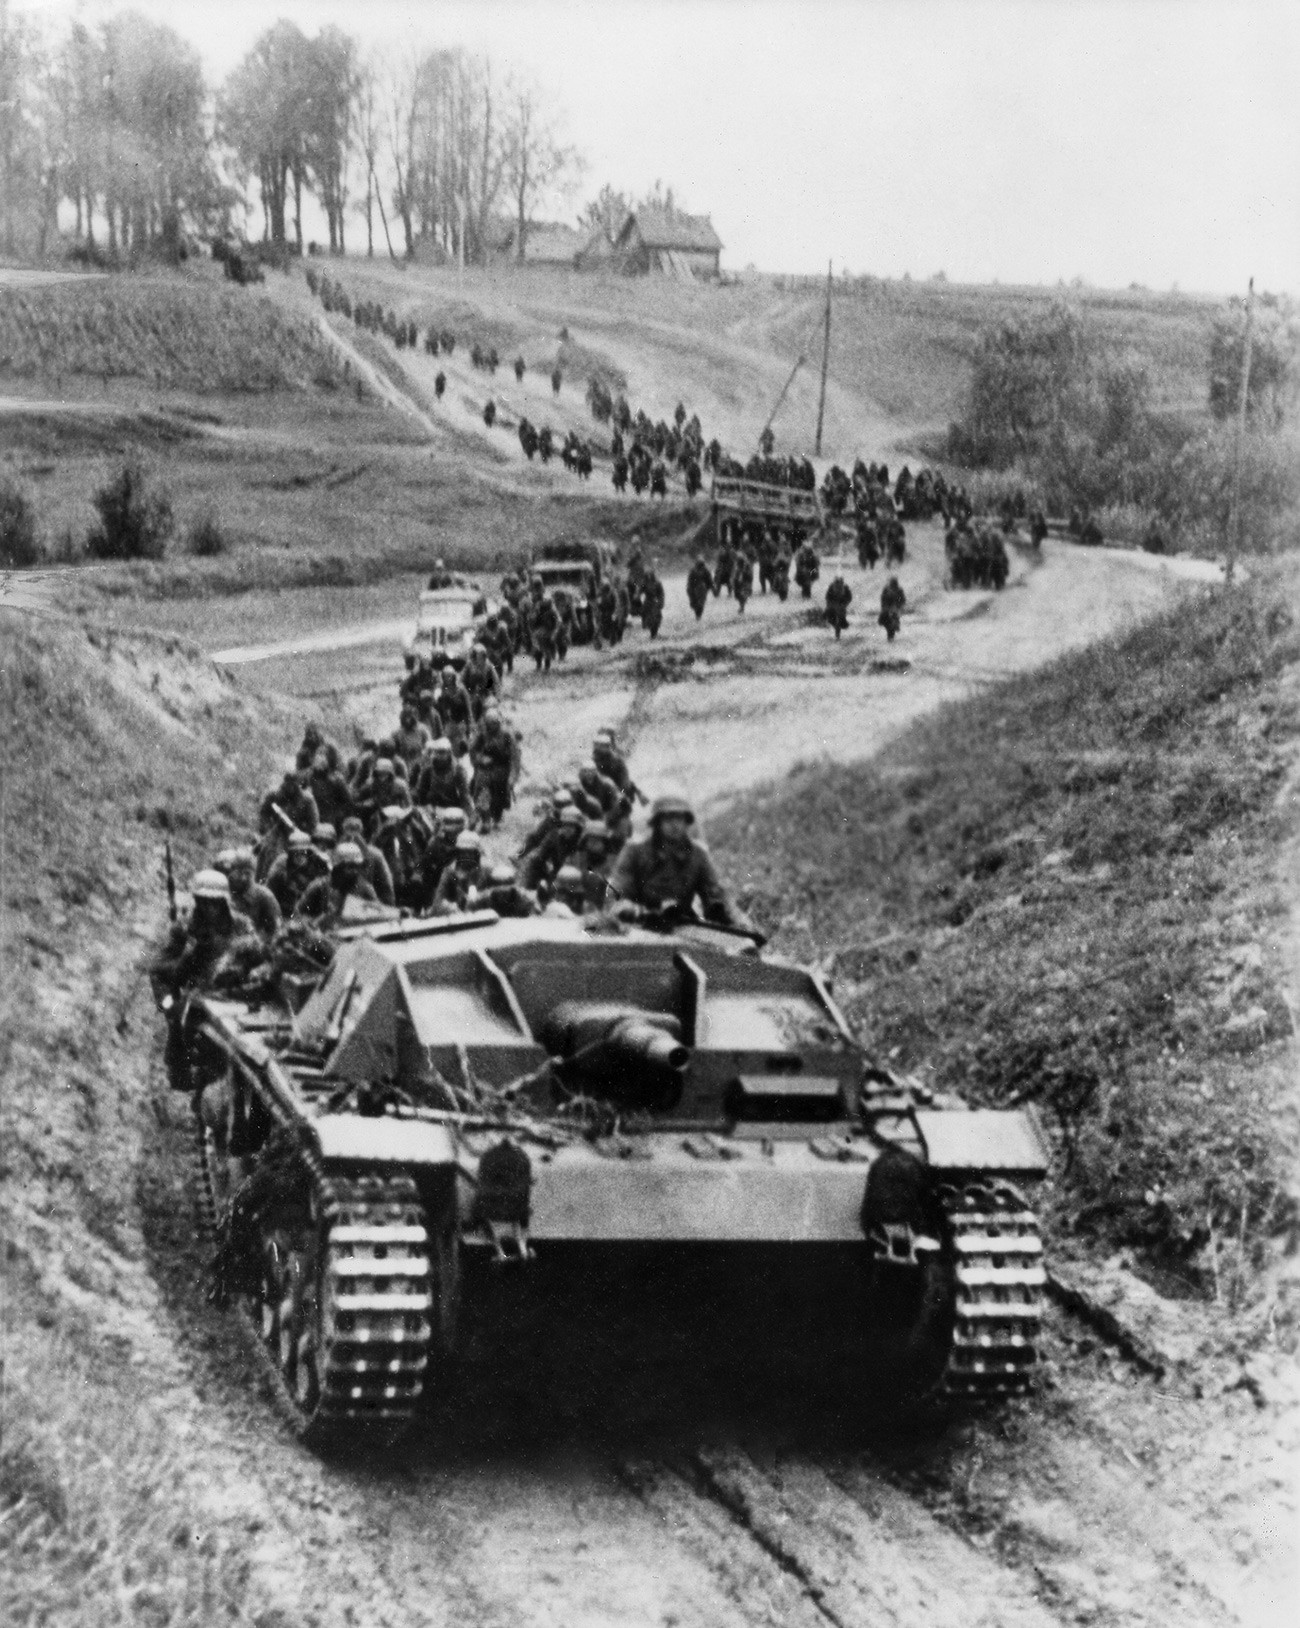 Источни фронт у Другом светском рату отворен је у јуну 1941. године, када је нацистичка Немачка напала СССР.